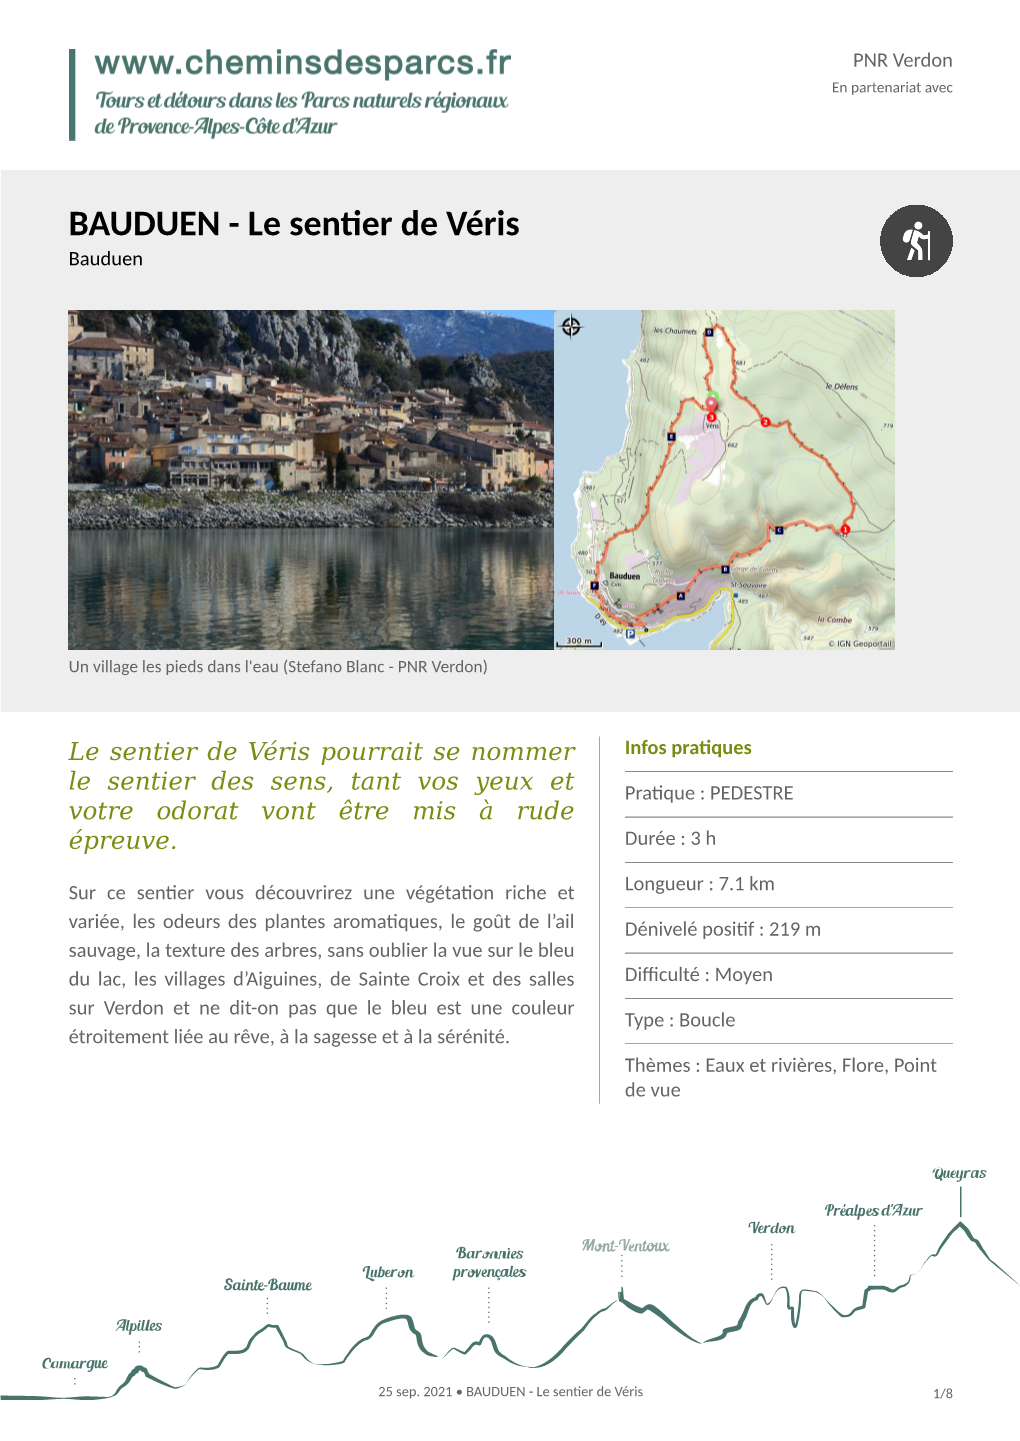 BAUDUEN - Le Sentier De Véris Bauduen